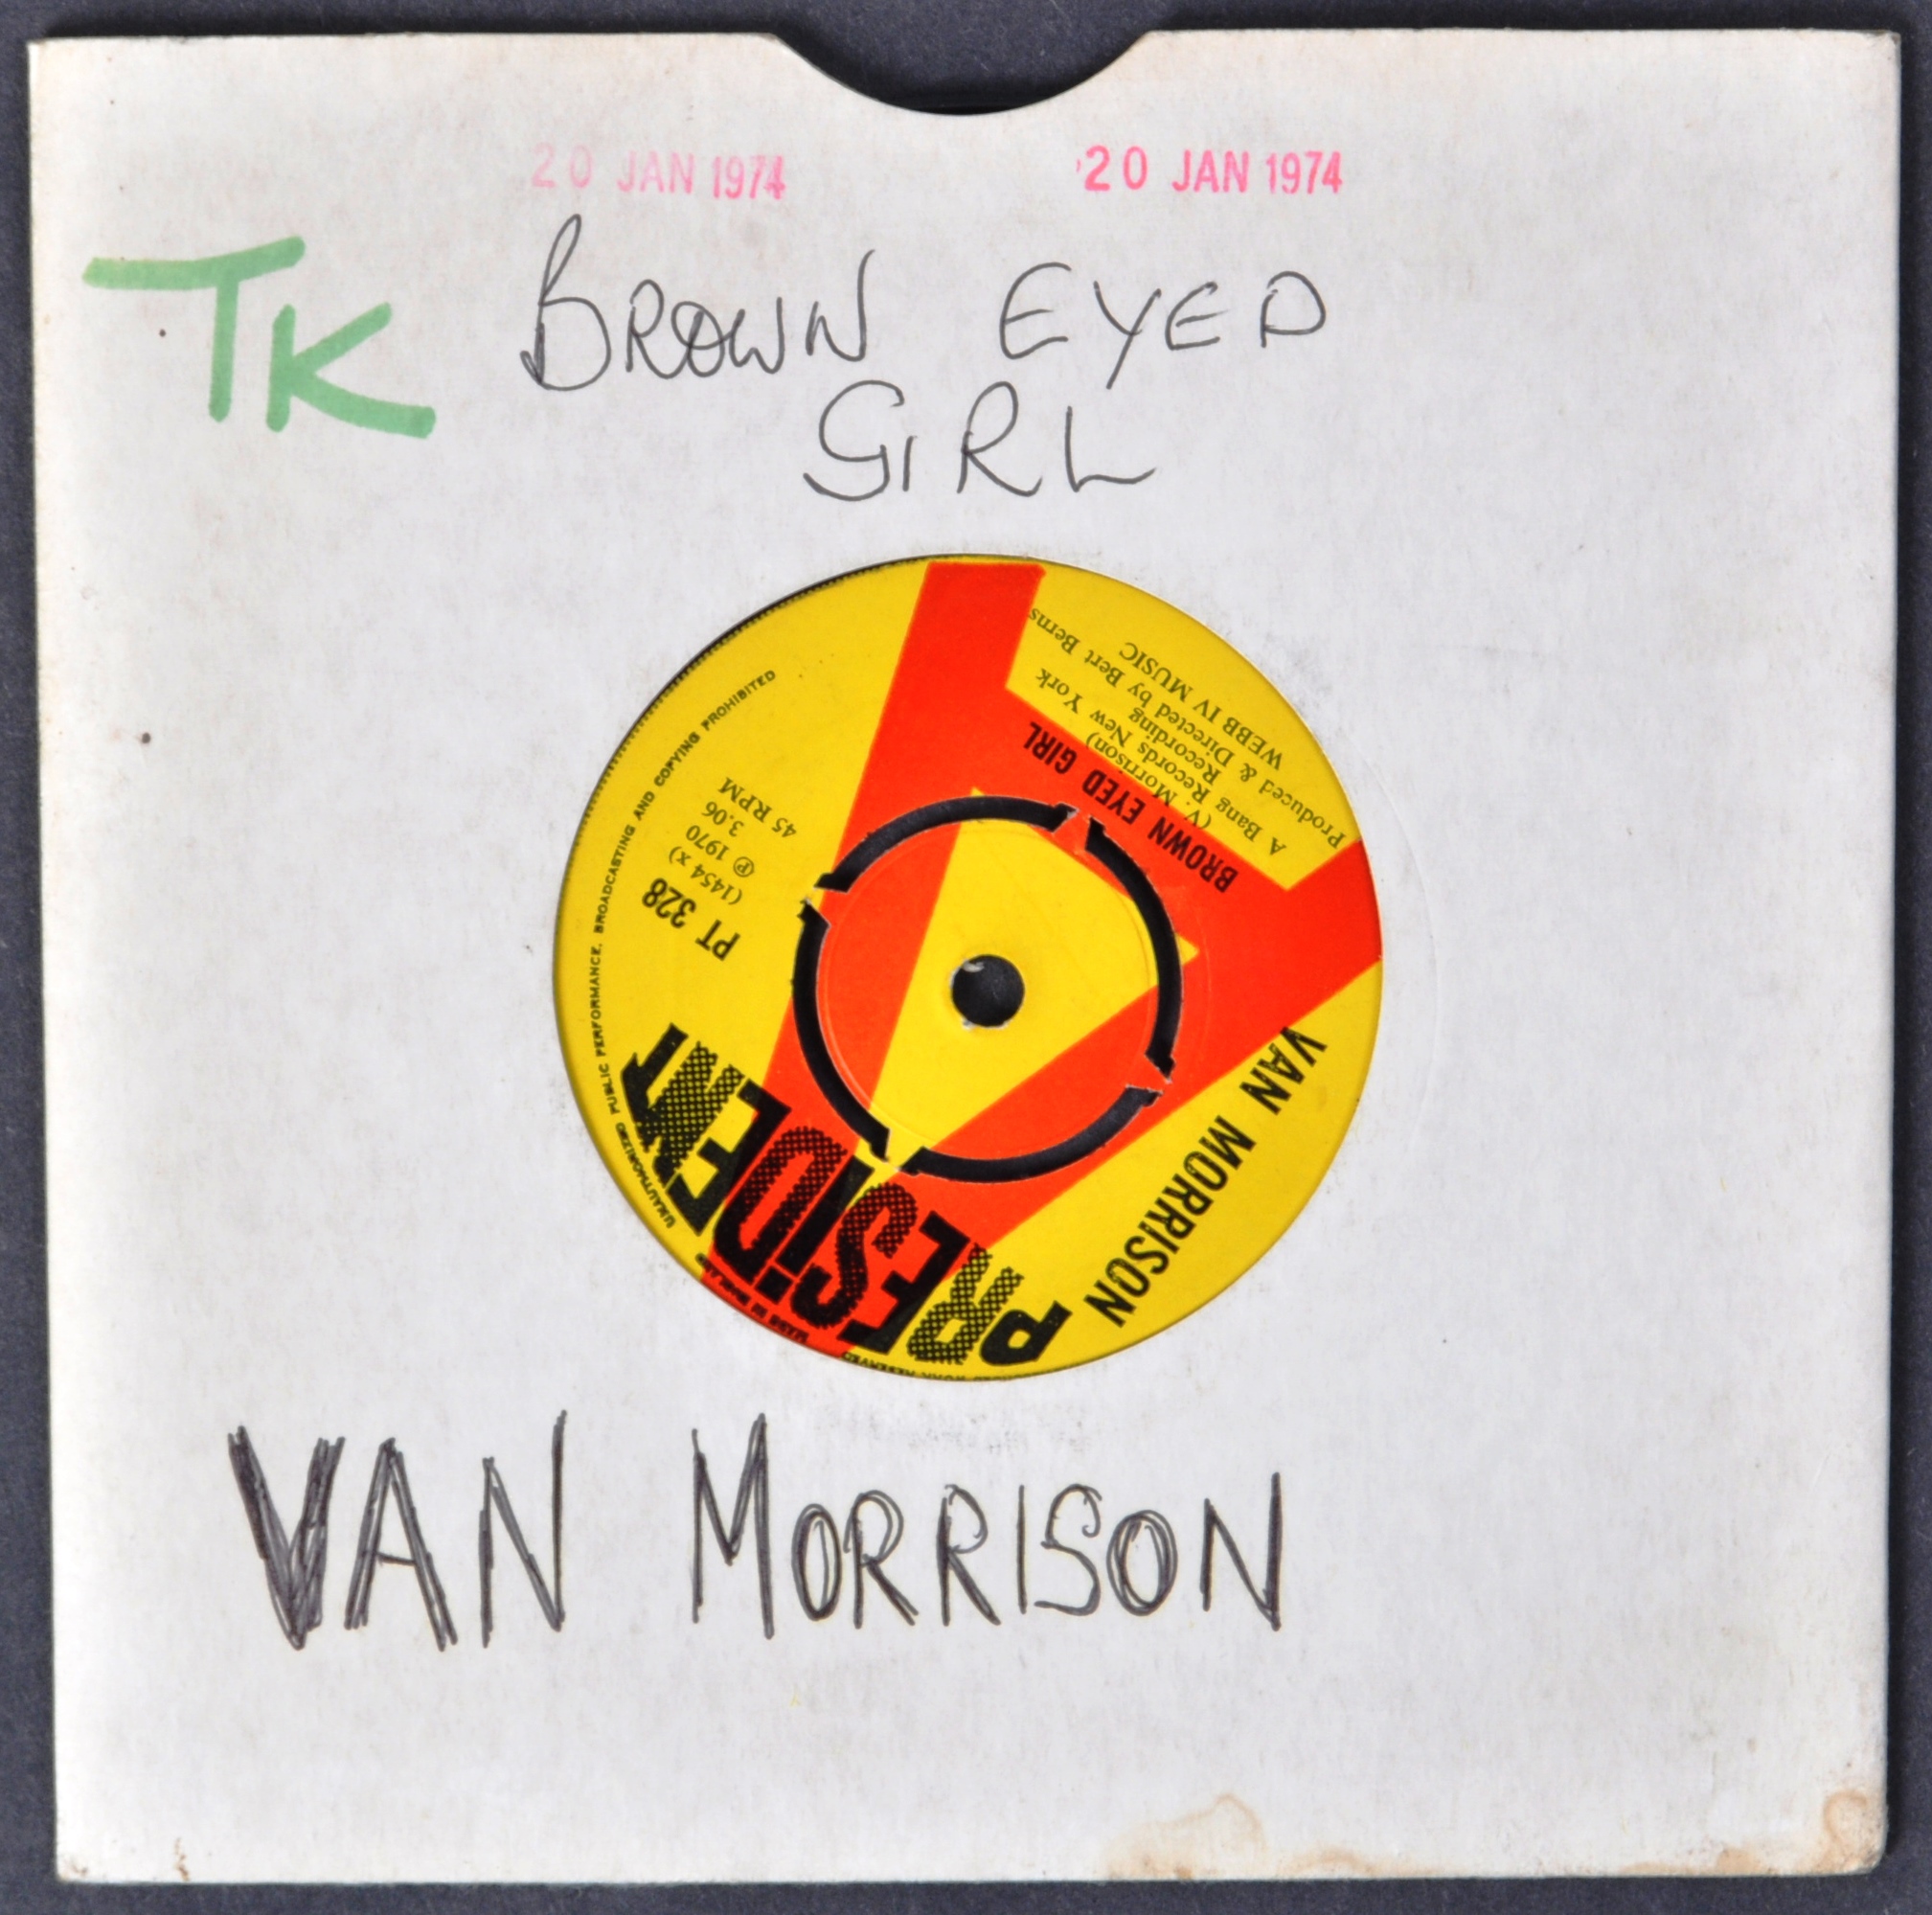 VAN MORRISON - BROWN EYED GIRL 45 7" SINGLE